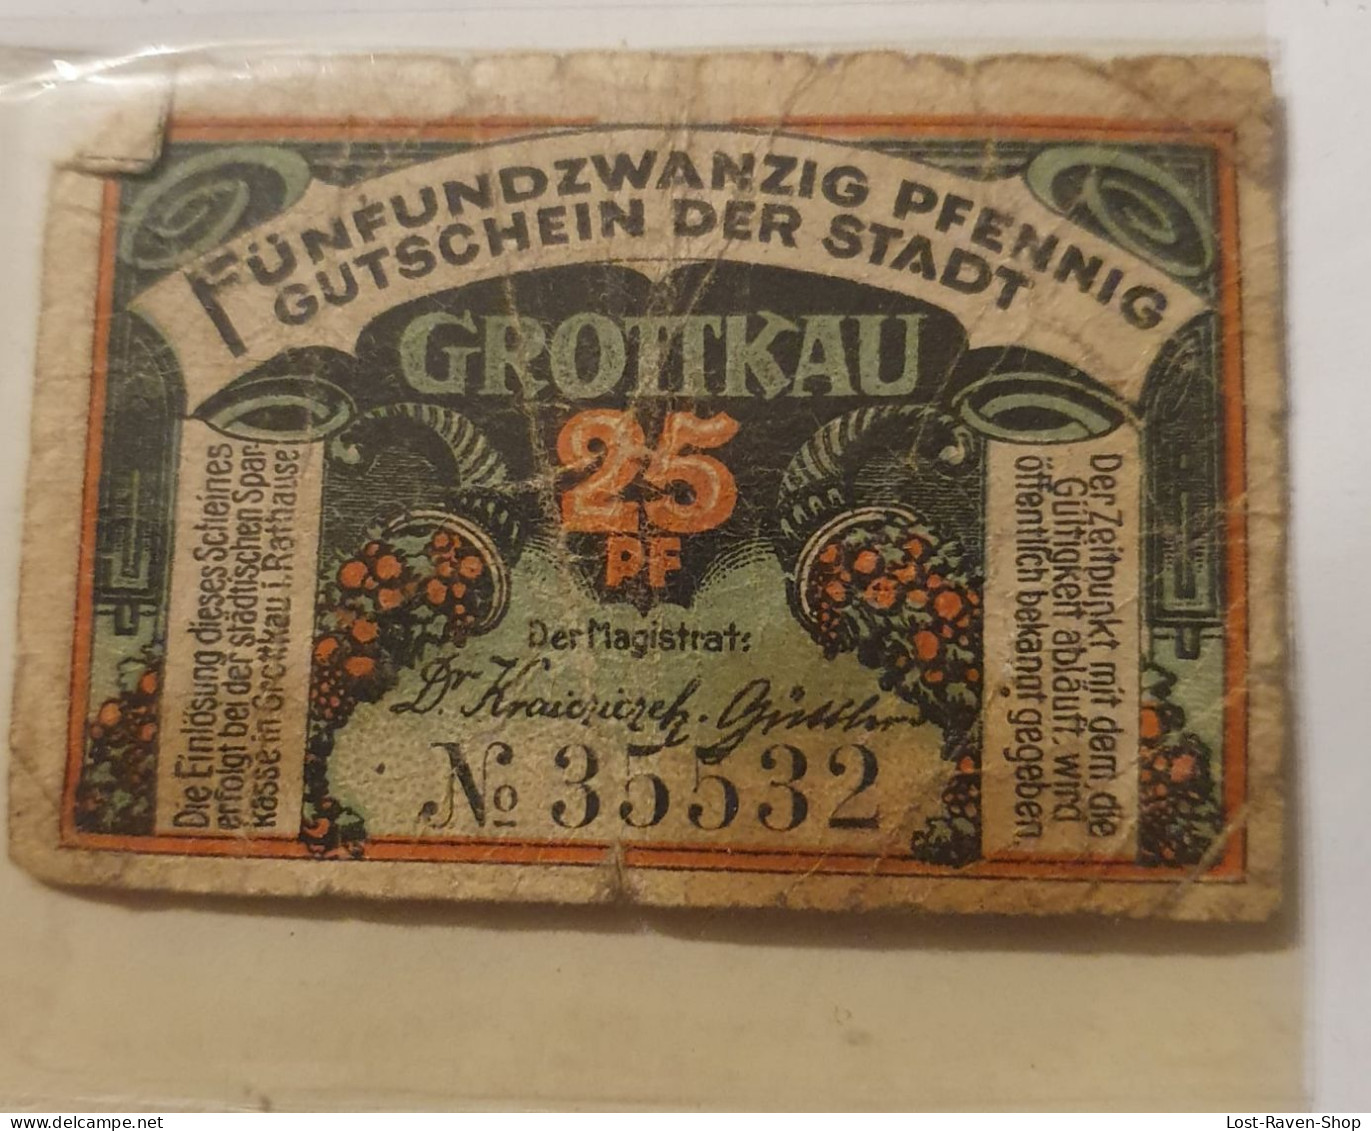 25 Pfennig Notgeld Grottkau - Deutschland - Ohne Zuordnung